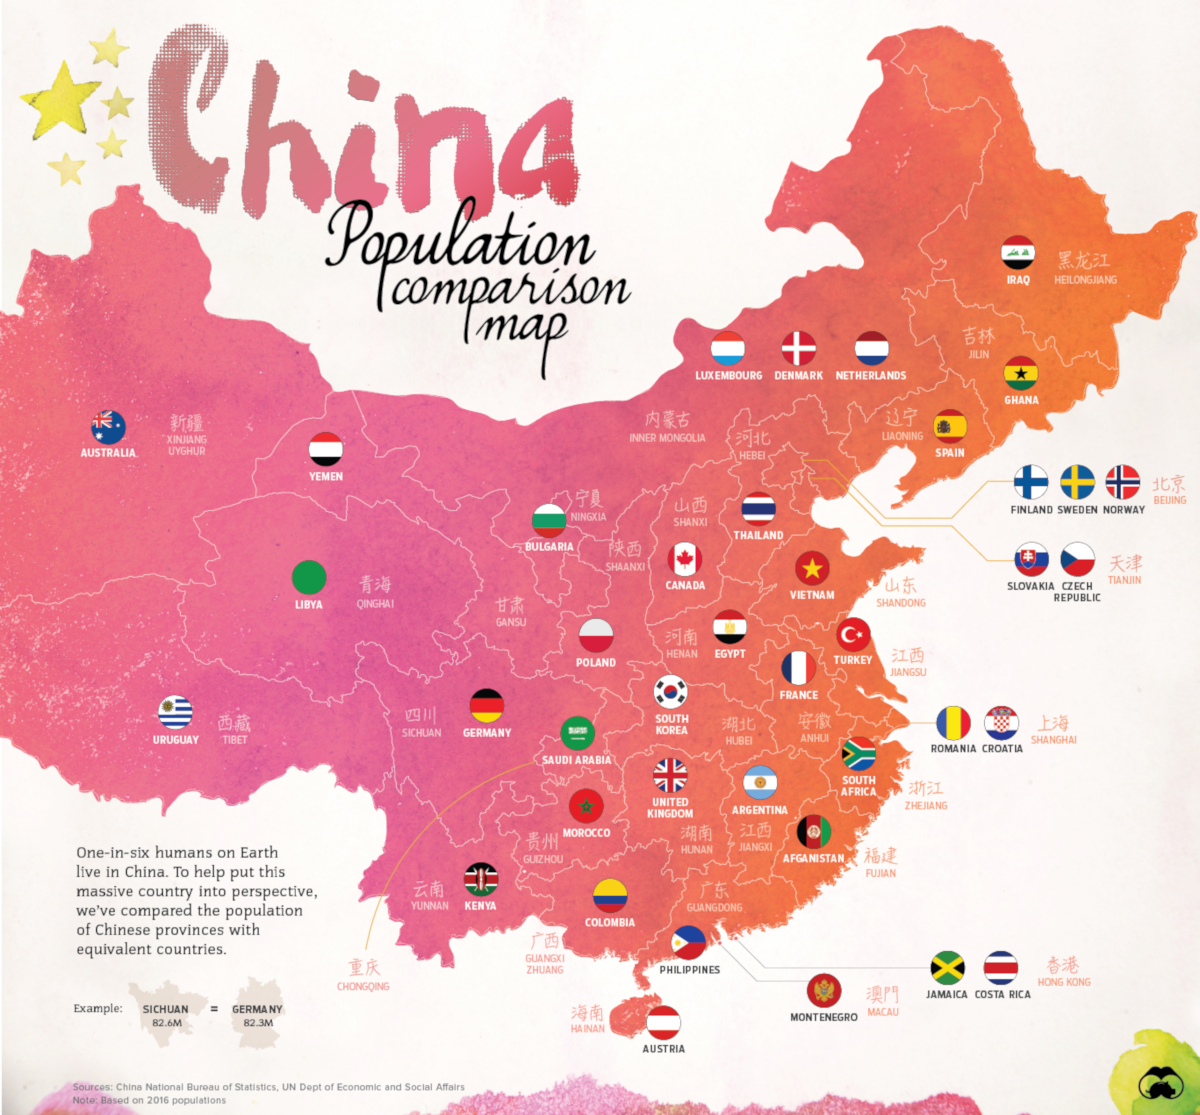 A Visual Capitalist ábrája jól mutatja, milyen hatalmas országról van szó: a kínai tartományokat a lakossága alapján más országokkal hasonlították össze.